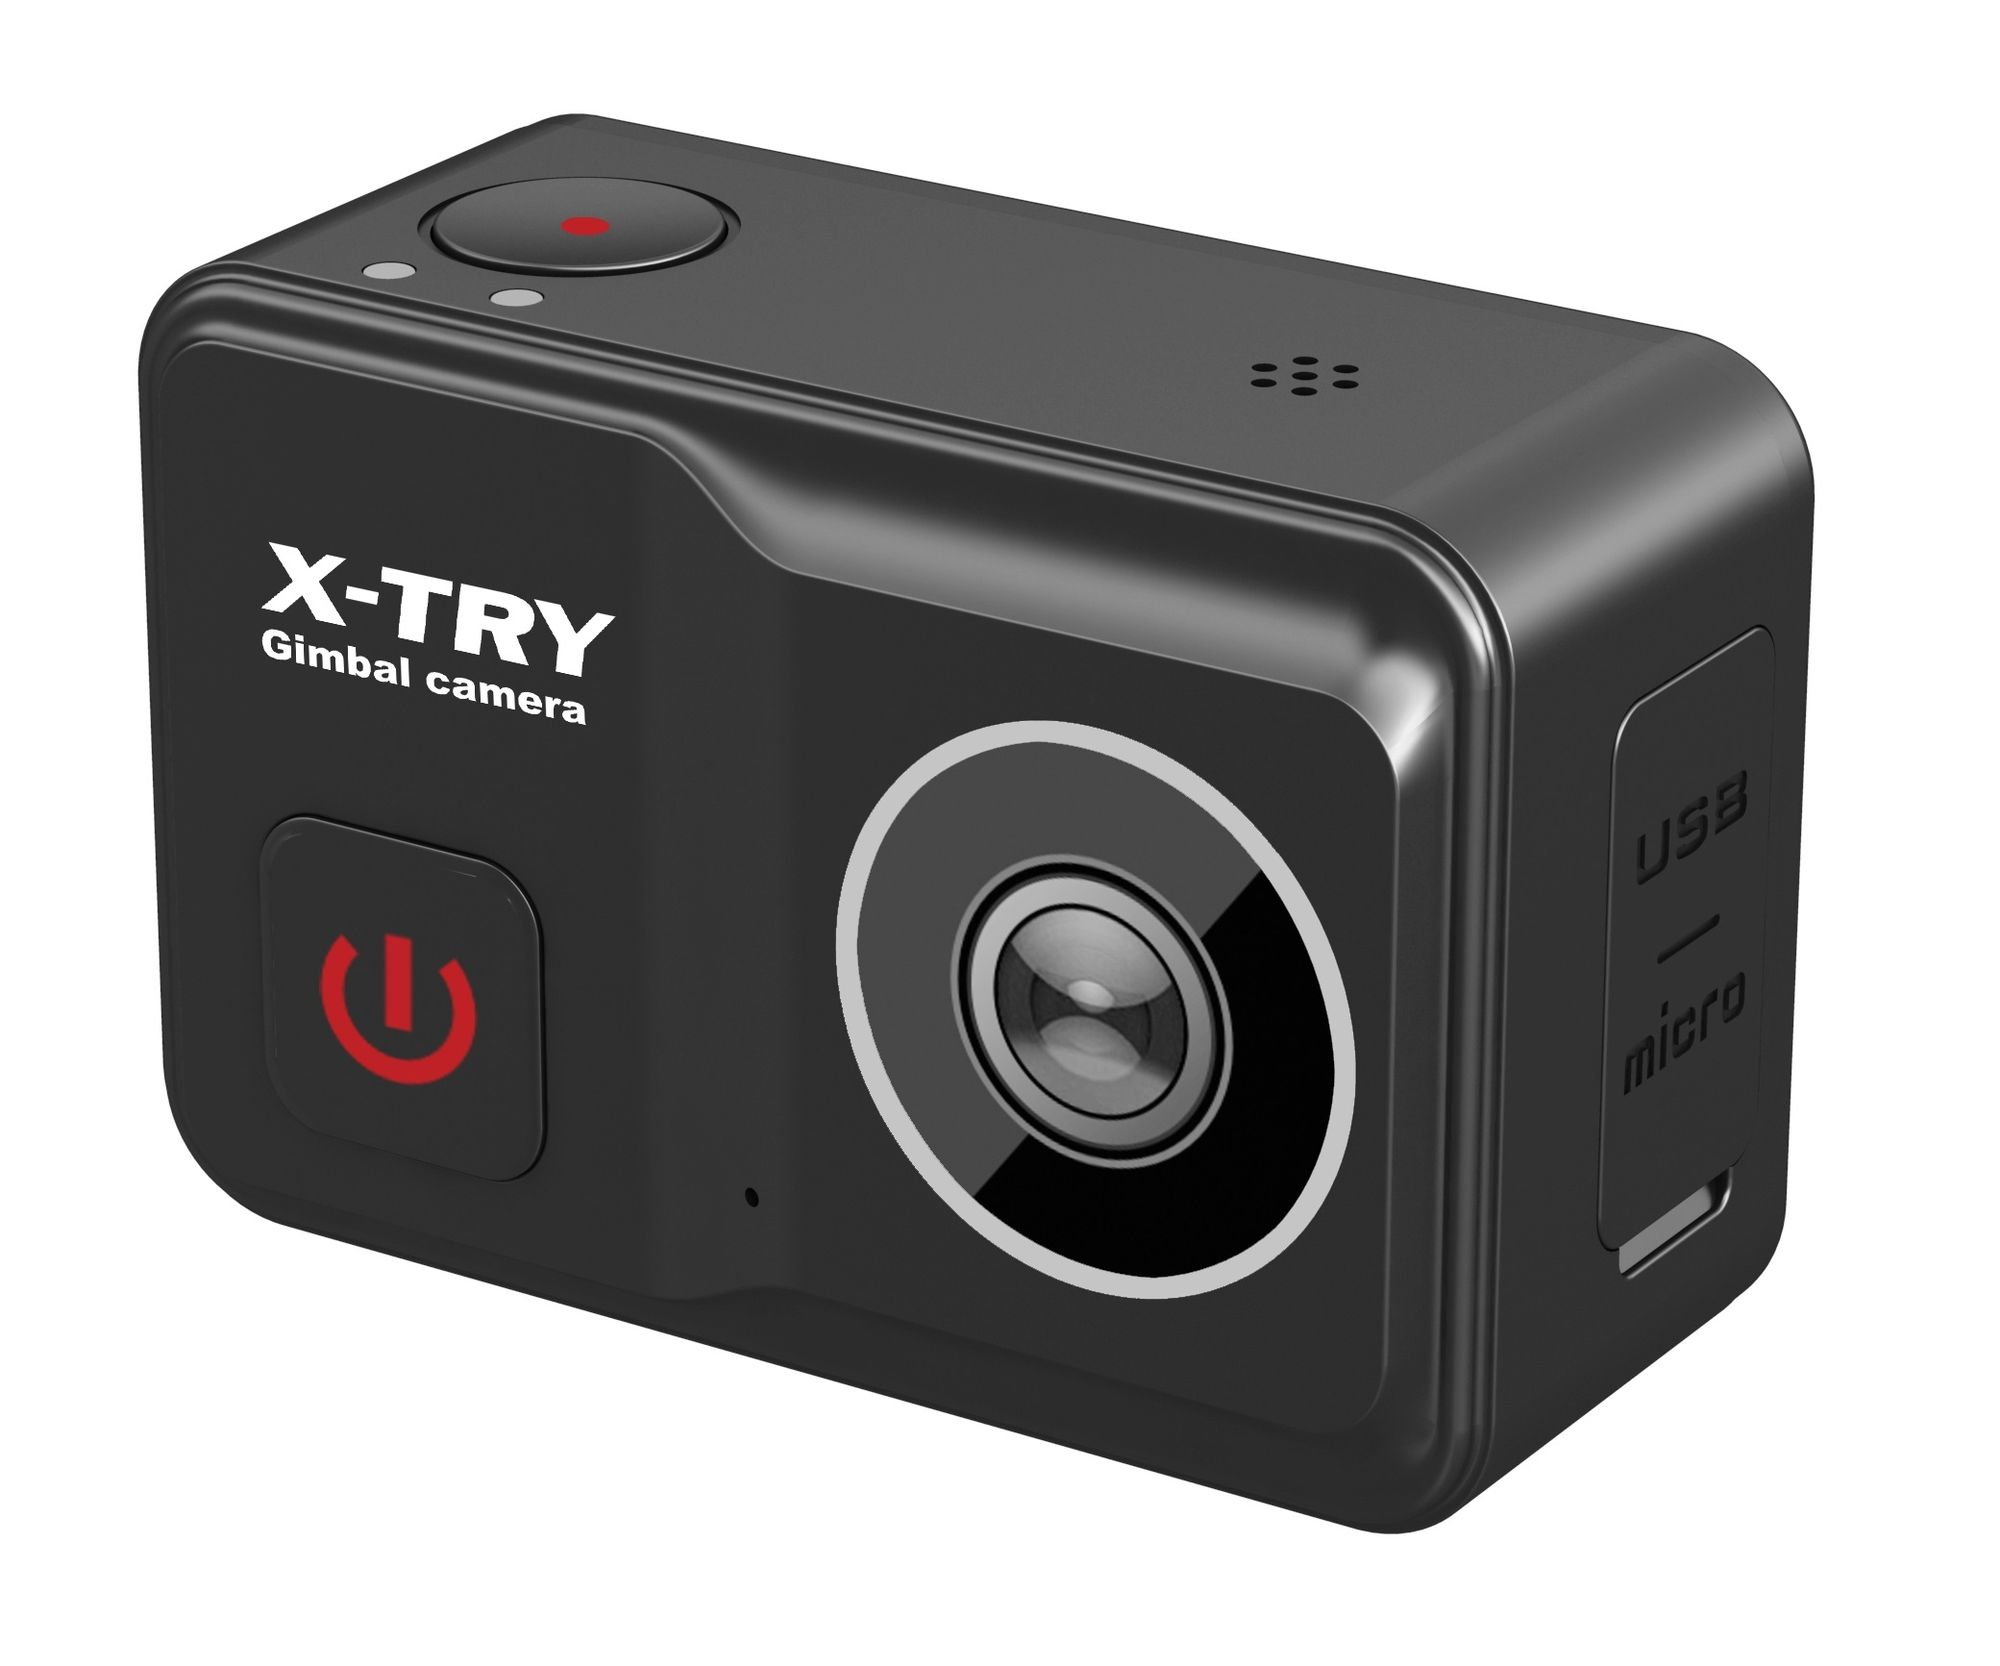 Экшн камера X-Try XTC502 Gimbal Real 4K/60FPS WDR Wi-Fi Power экшн камера x try xtc403 real 4k 60fps wdr wi fi battery